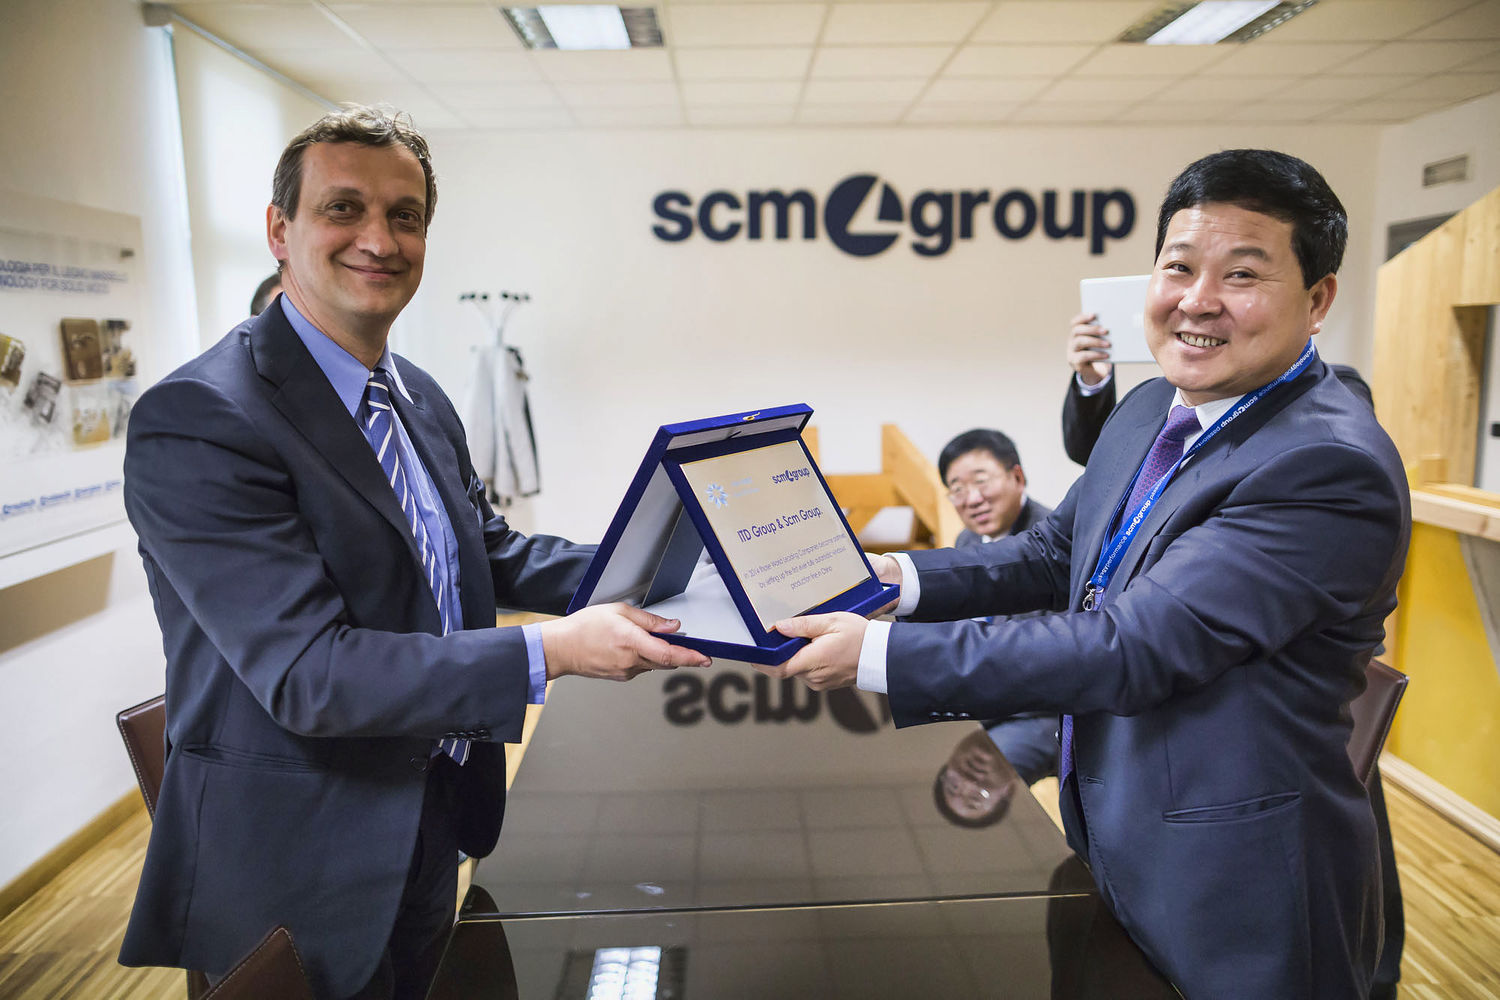 Dalla Cina, visite eccellenti in Scm Group